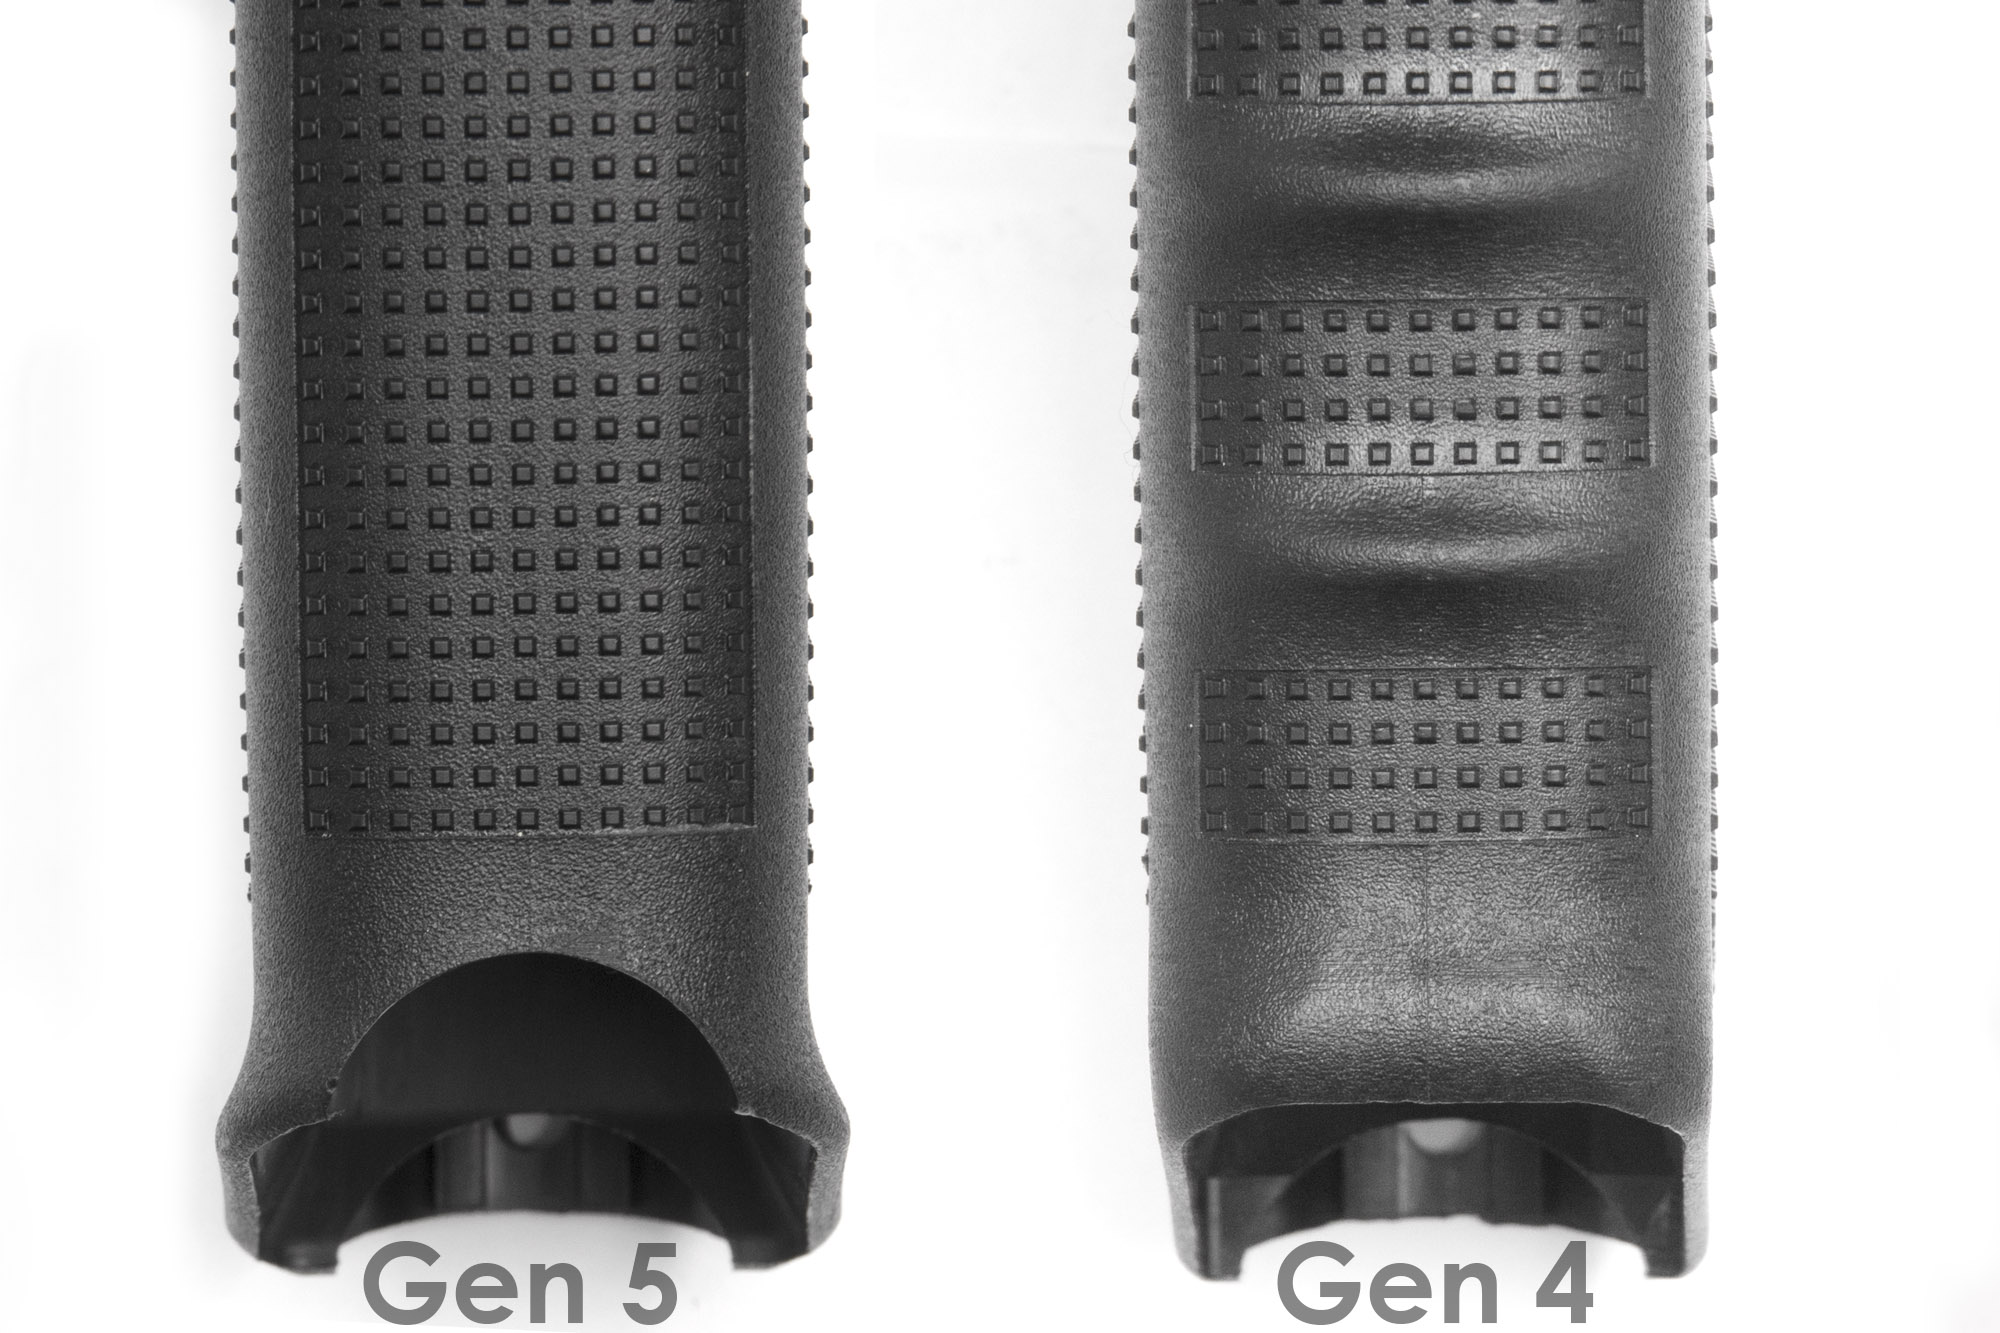 Here's The Full Reveal Of The New Glock Gen5 Pistol | Recoil